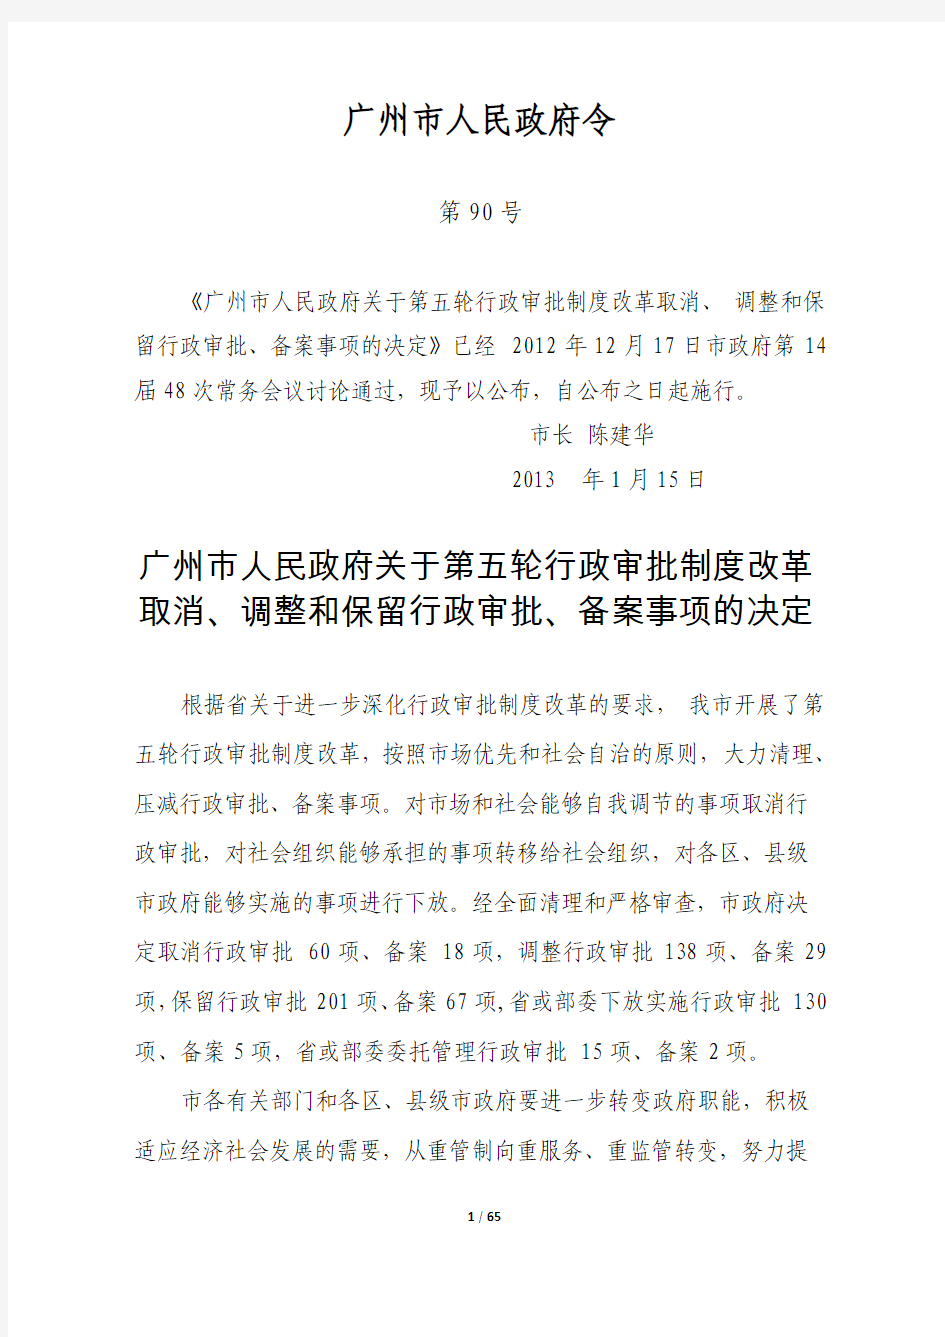 广州市人民政府关于第五轮行政审批制度改革取消、调整和保留行政审批、备案事项的决定(90号令)